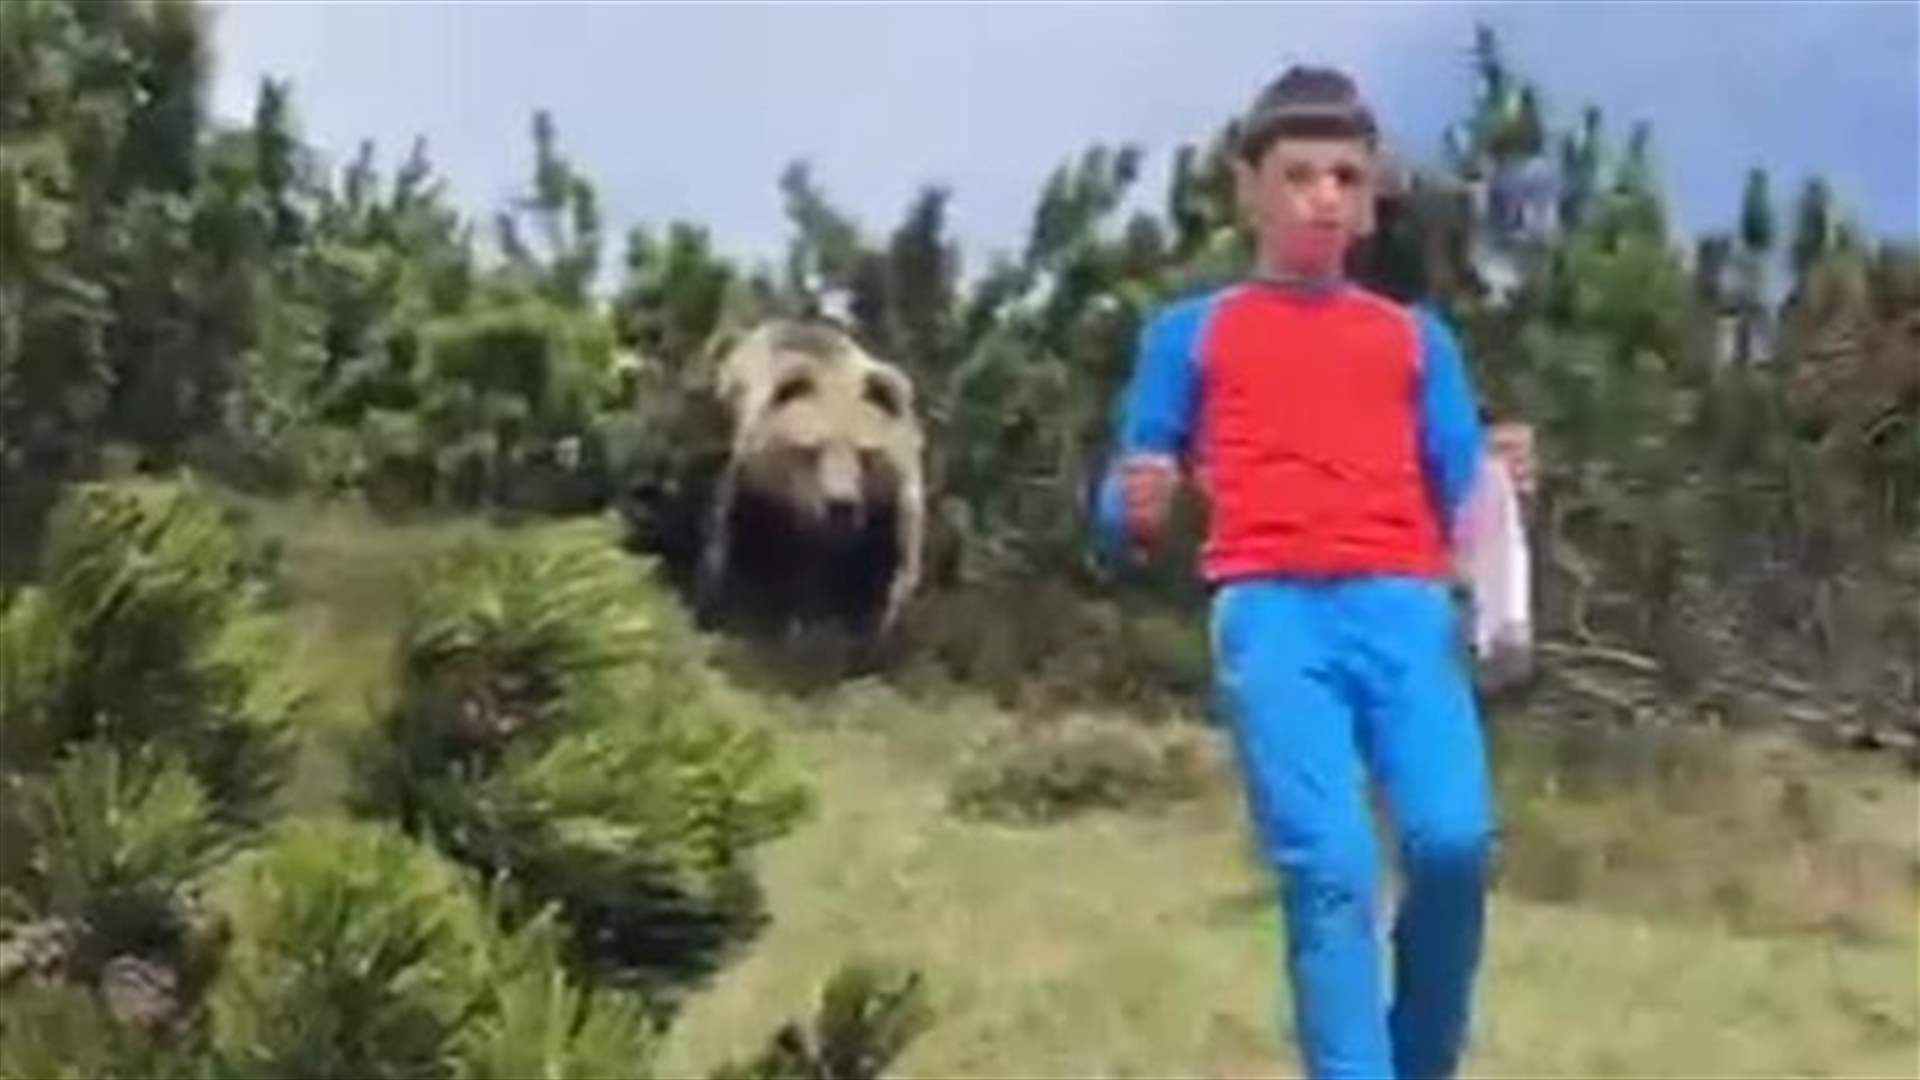 فيديو لدب يلاحق صبياً في غابة يجتاح مواقع التواصل الإجتماعي